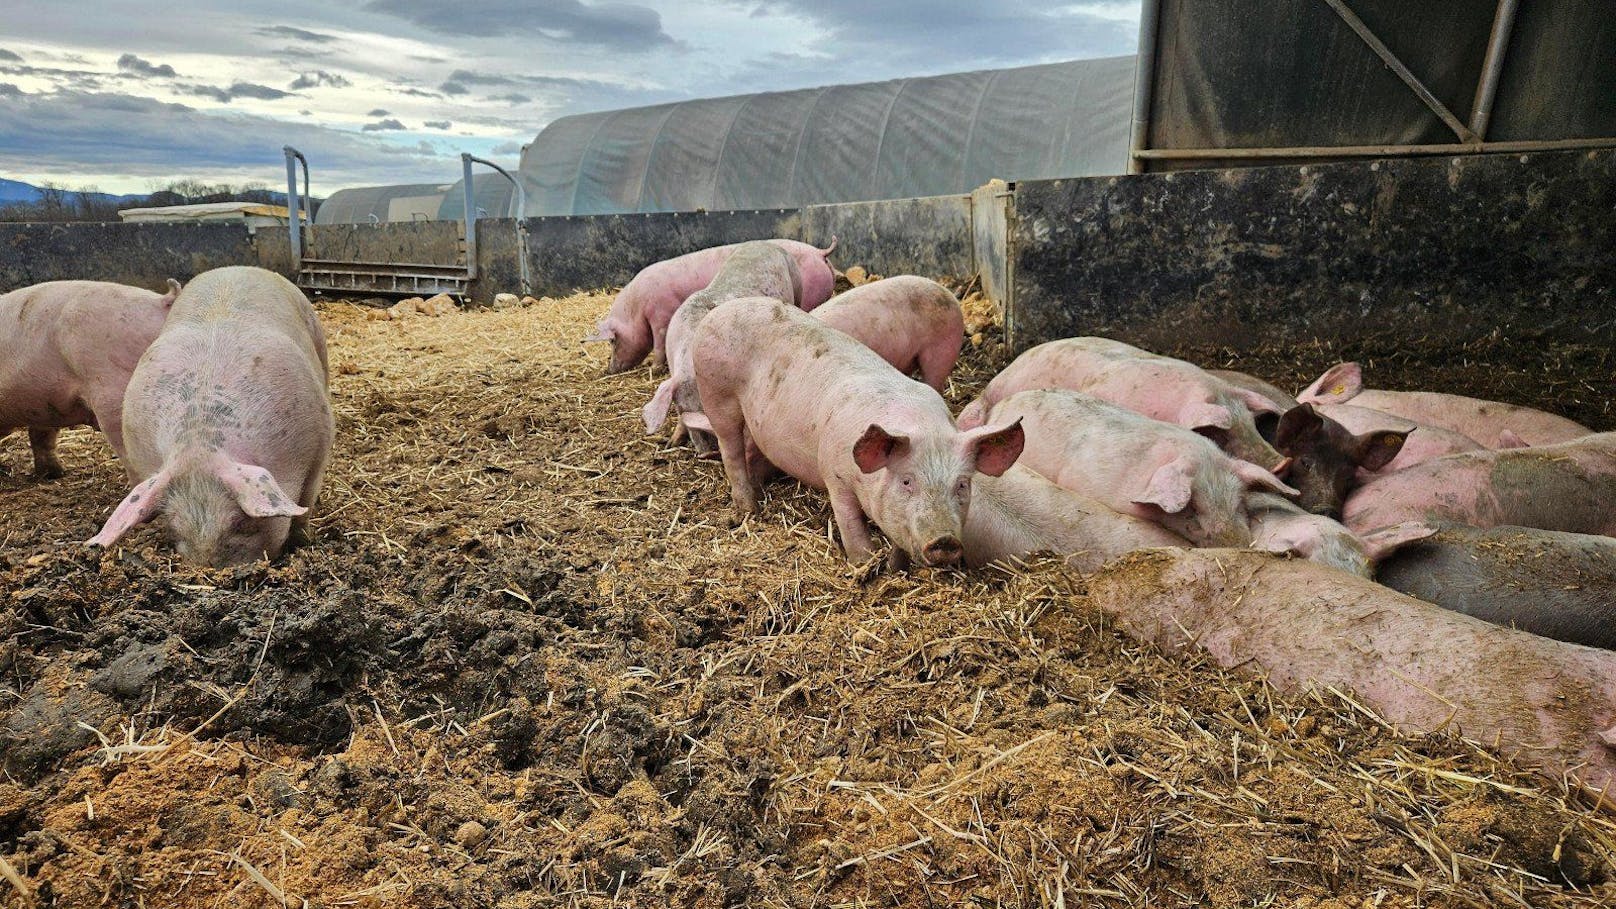 Behörde will Schweine vom Feld haben